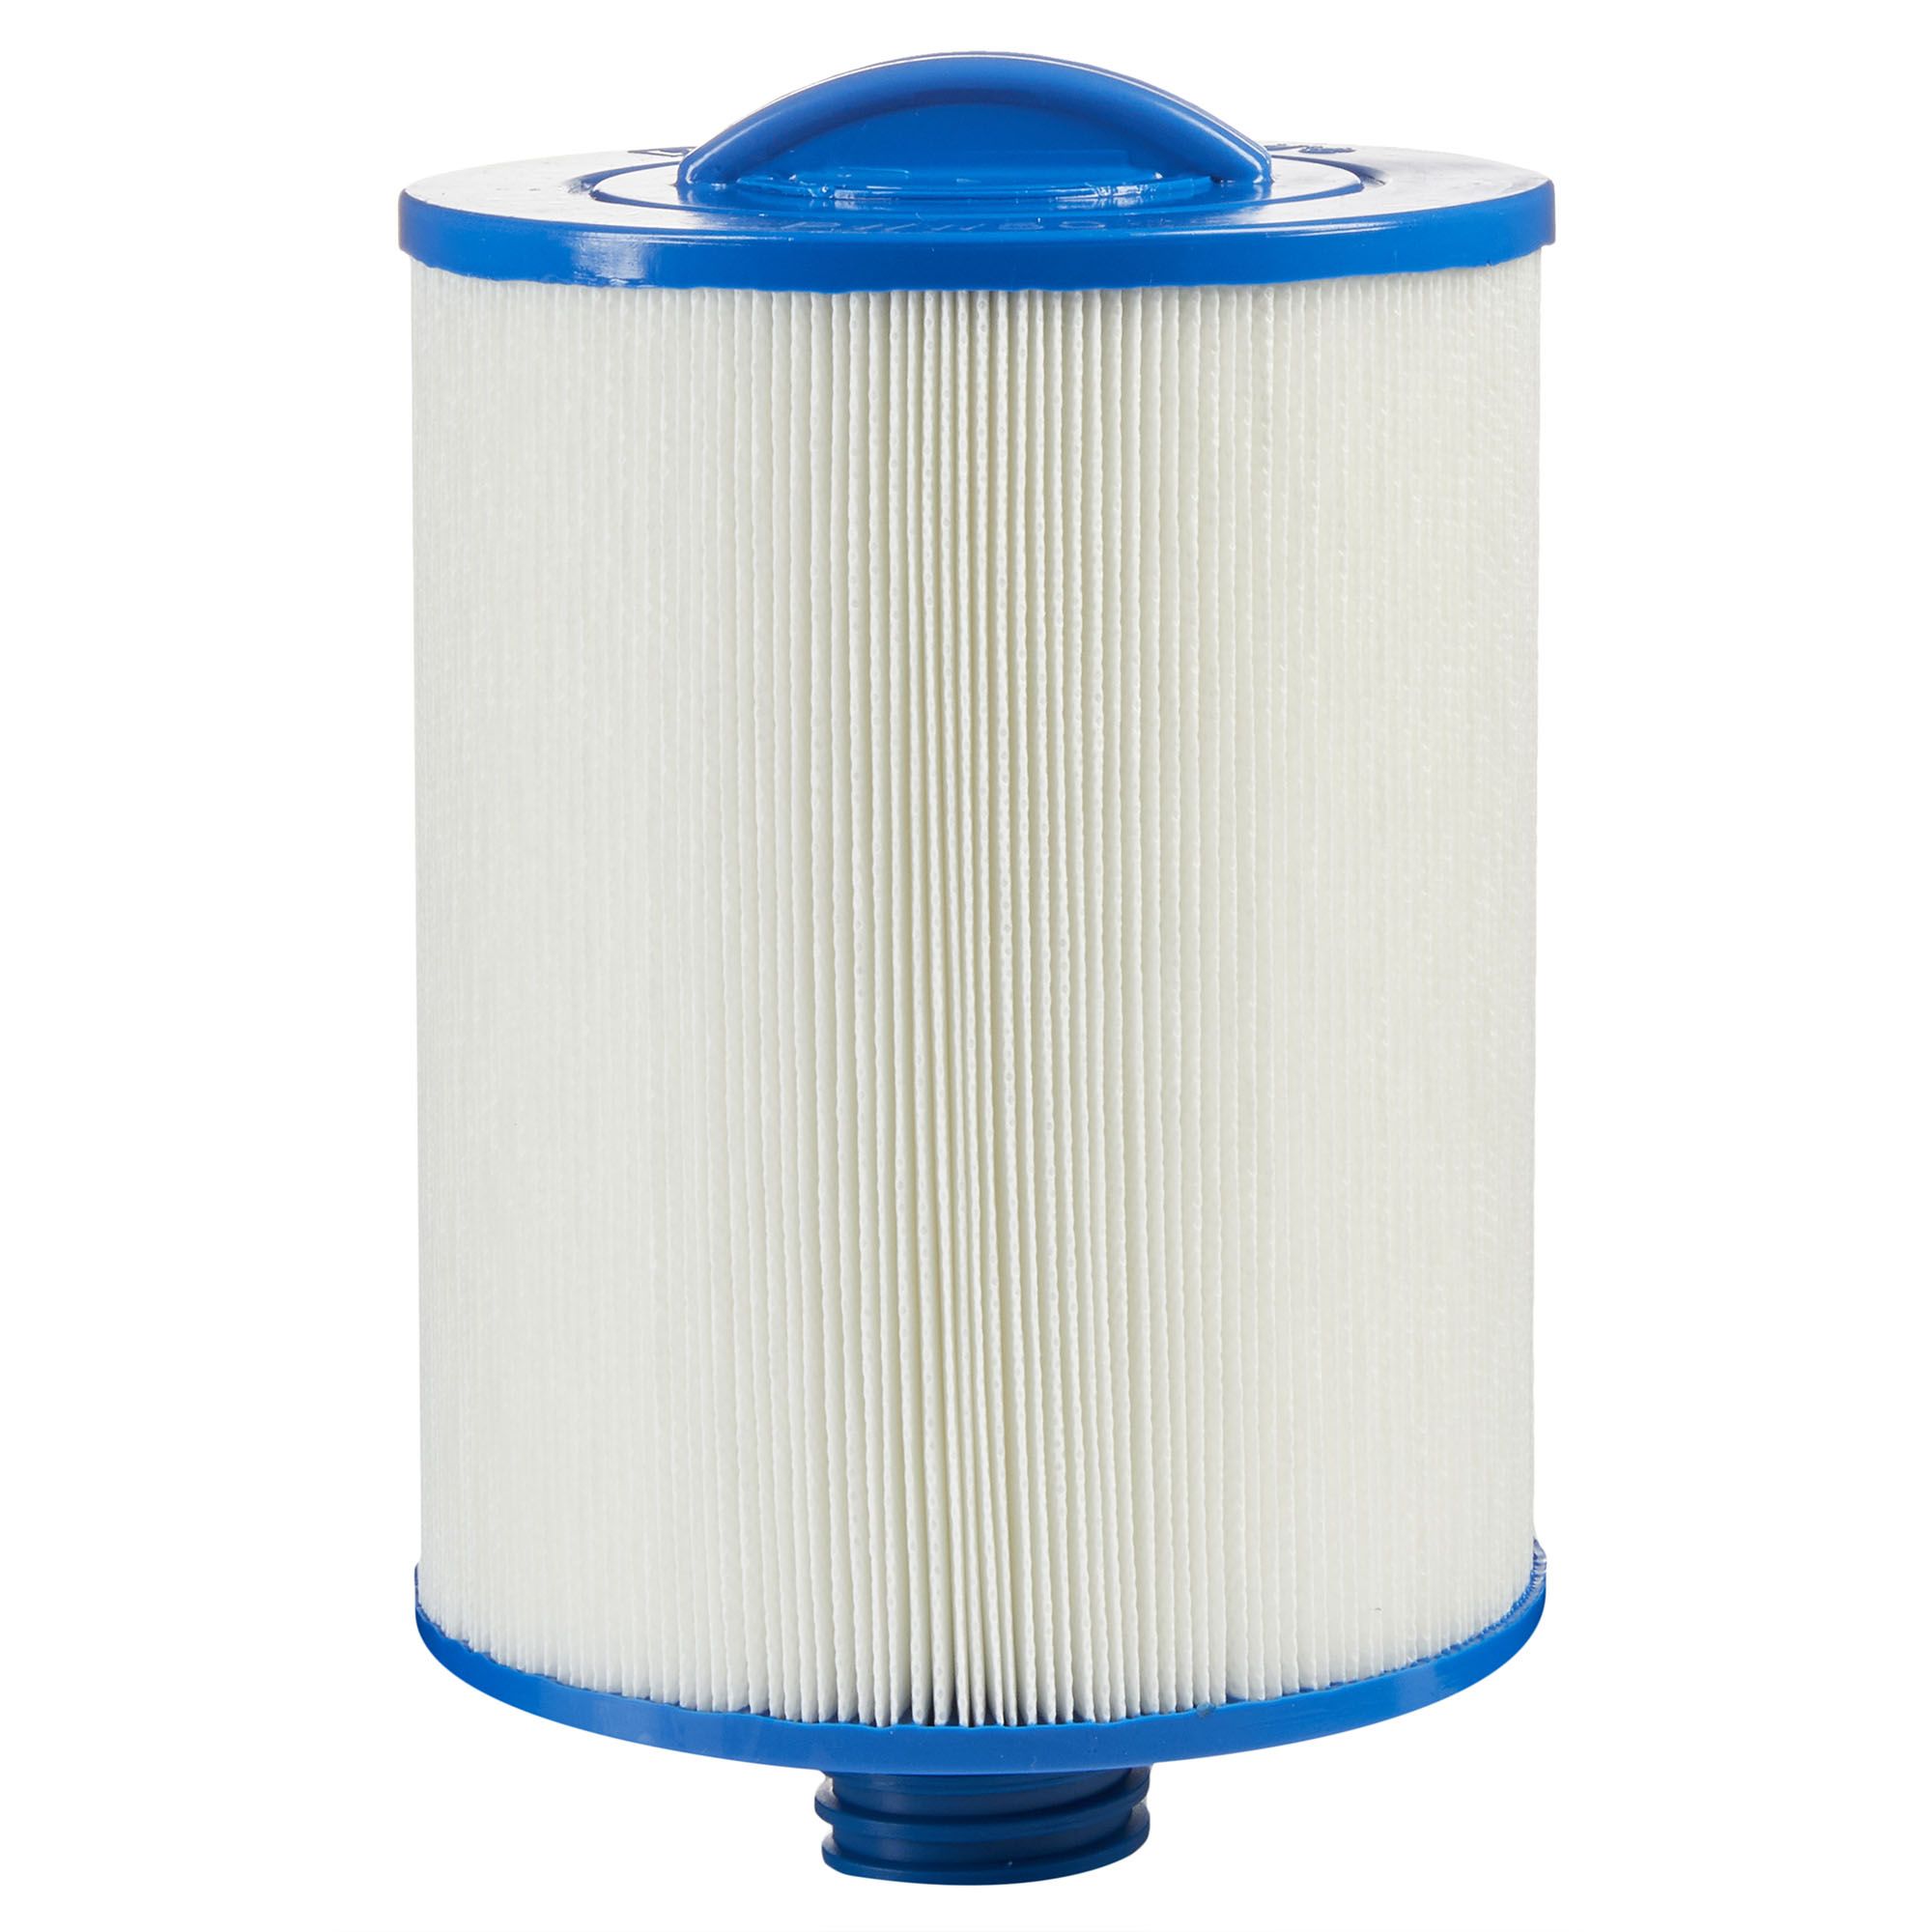 Vhbw 3x Cartouche filtrante remplacement pour Festool 496406 pour  aspirateur - Filtre pour particules fines